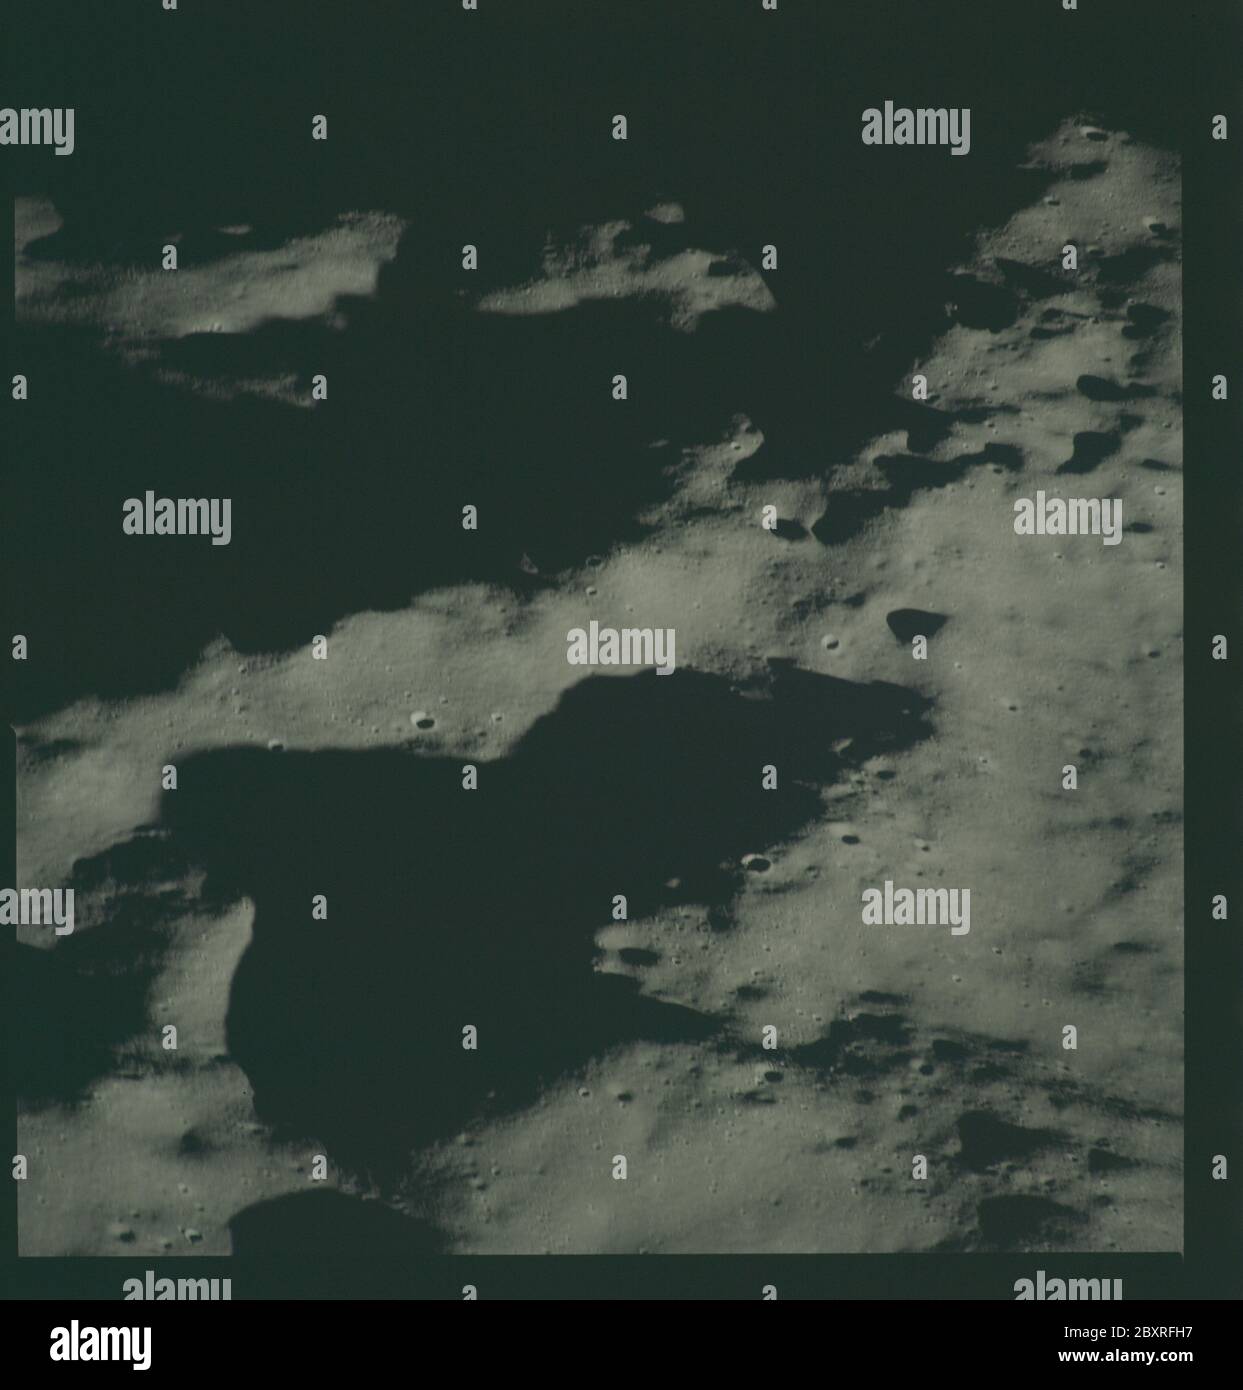 AS14-72-9948 - Apollo 14 - immagine della missione Apollo 14 - Vista ad est da un punto ad ovest del cratere Chaplygin.; scopo e contenuto: Il database originale descrive questo come: Descrizione: Vista ad est da un punto ad ovest del cratere Chaplygin. Le immagini sono state scattate durante la Rivoluzione 14 della missione Apollo 14. Il caricatore di pellicola originale era etichettato L, il tipo di pellicola era CEX S0-368 (Ektachrome MS, inversione di colore), lente da 500 mm con un'elevazione del sole di 7 gradi. La scala approssimativa della foto è 1:1,360,000. La latitudine del punto principale era di 3.5S dalla longitudine 148.5E, con un'inclinazione della telecamera di 50 gradi e un azimuth di 45 Foto Stock